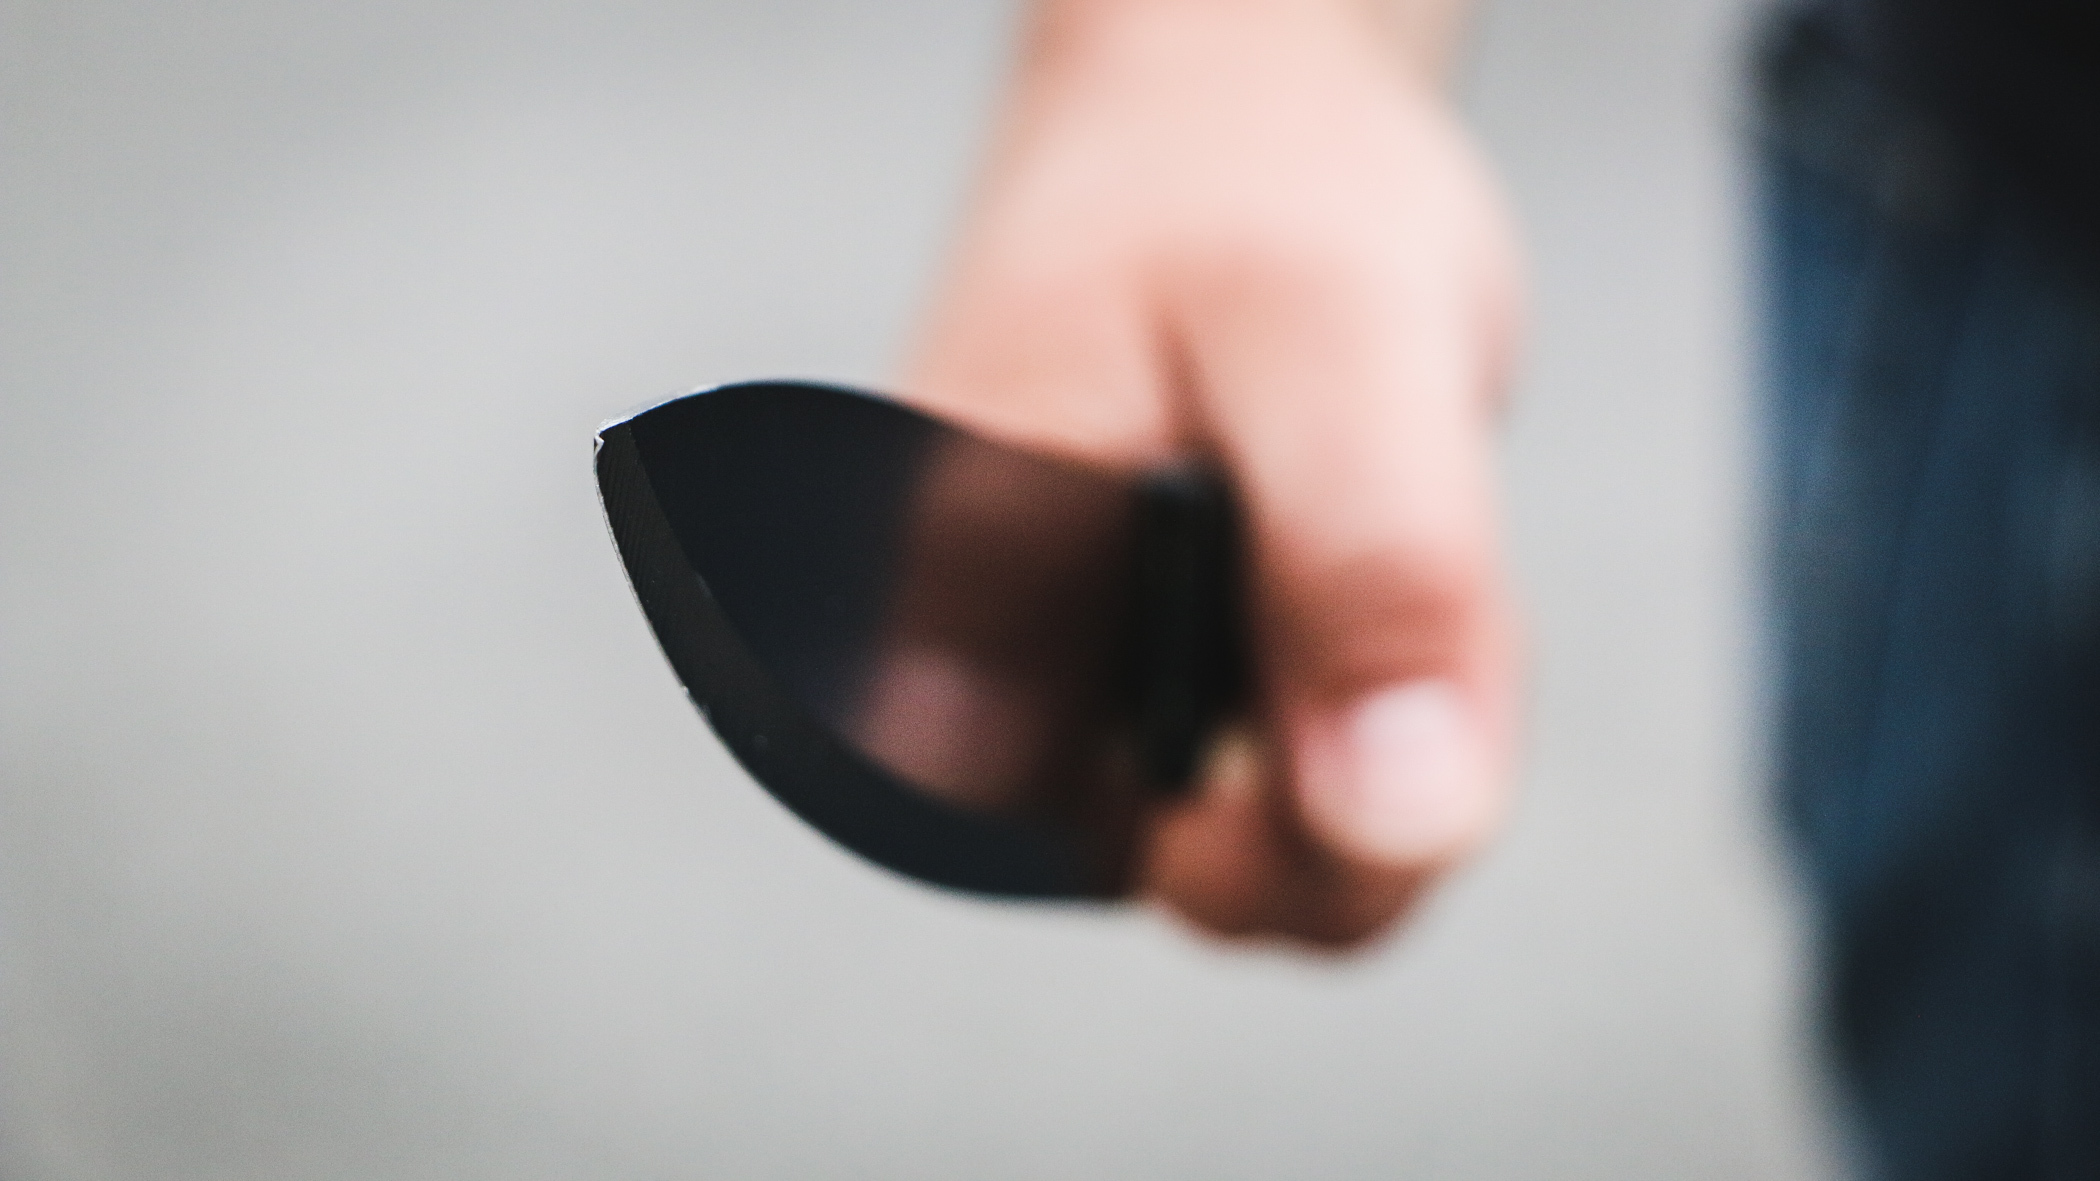 В ХМАО пьяный мужчина метнул нож в грудь бойцу Росгвардии